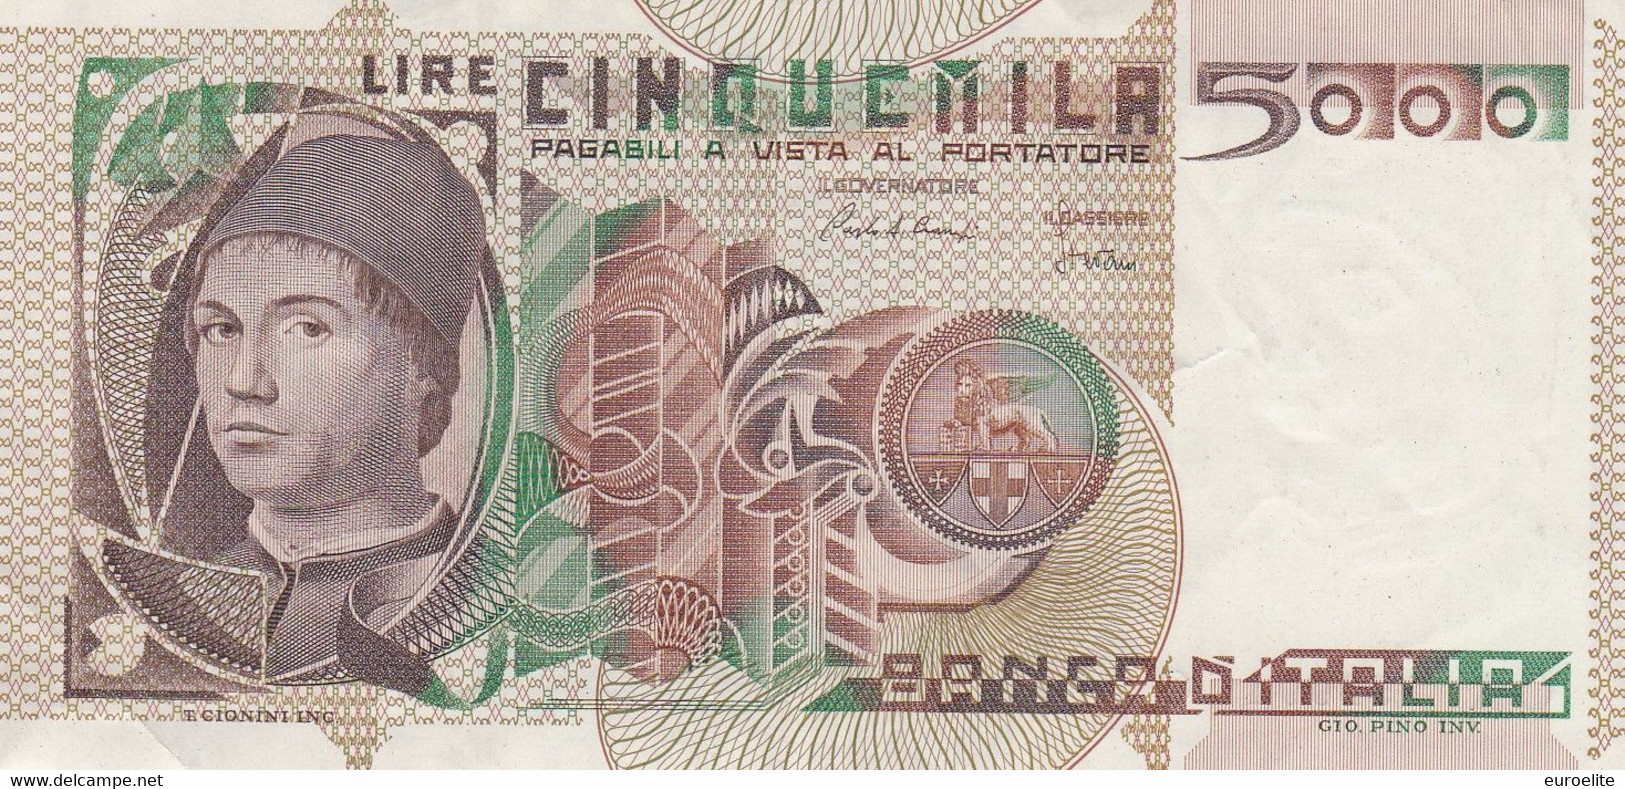 5000 LIRE ANTONELLO DA MESSINA - 2000 Lire